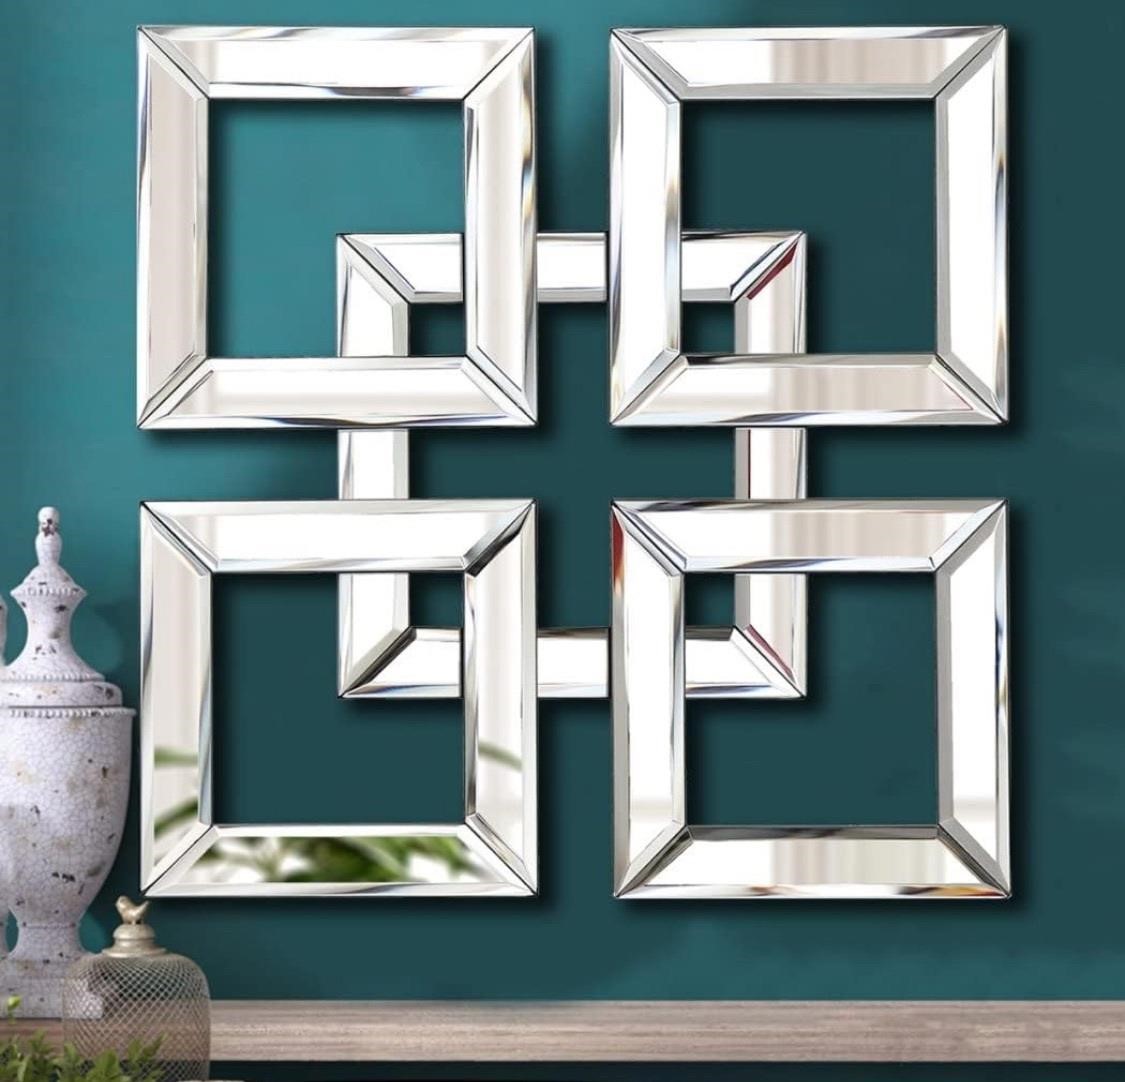 $50 Silver Mirrored Wall Decor 16x16” Decorative